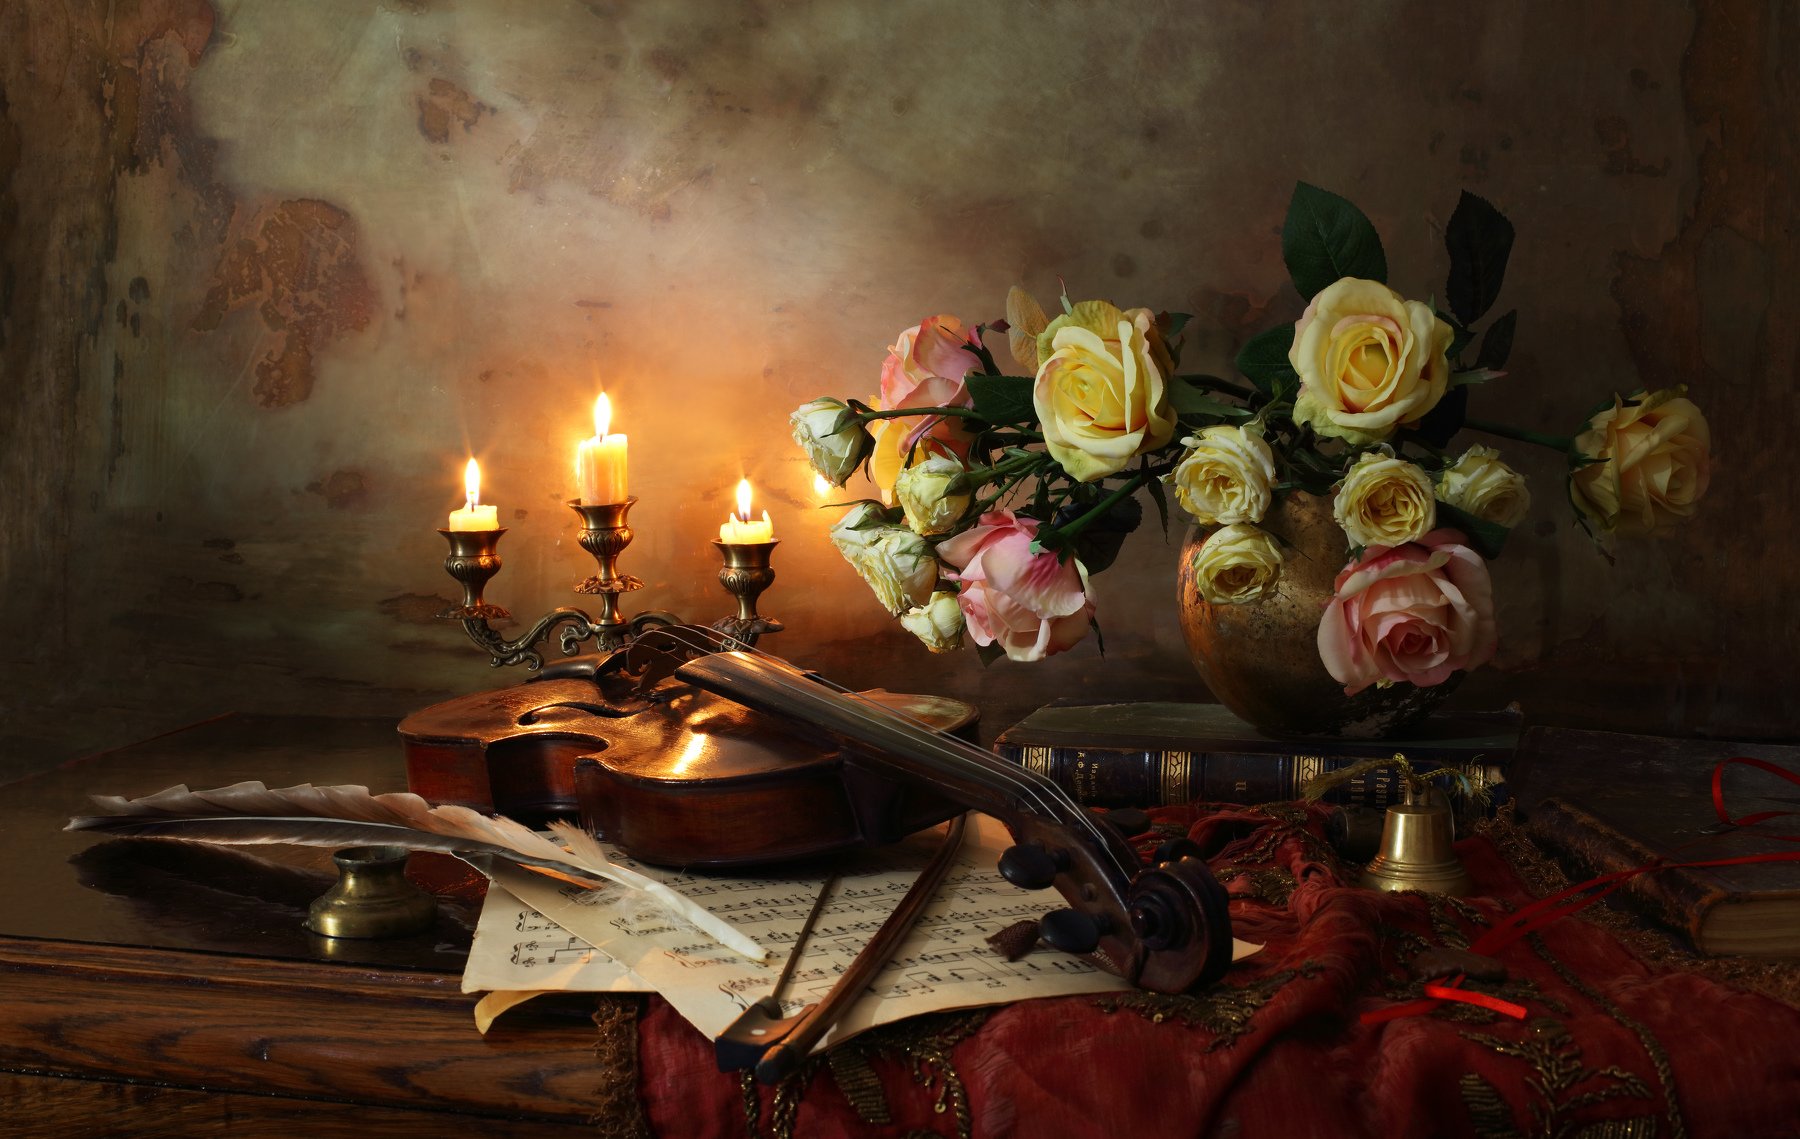 скрипка, музыка, цветы, свет, искусство, свечи, розы, Андрей Морозов